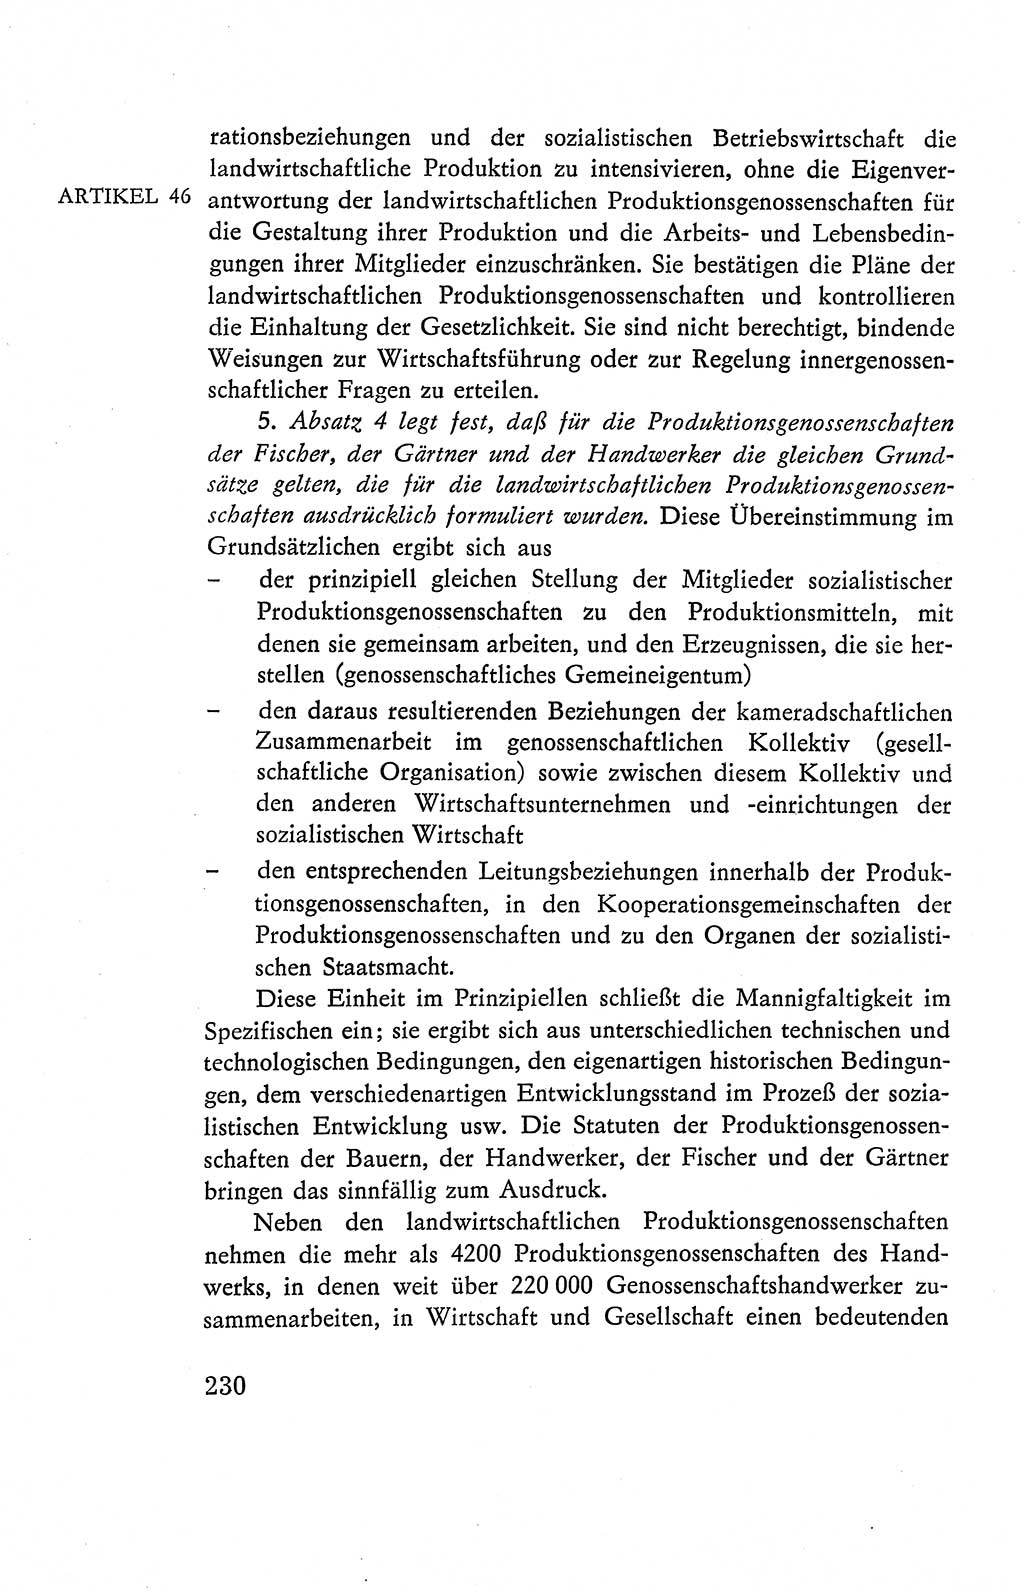 Verfassung der Deutschen Demokratischen Republik (DDR), Dokumente, Kommentar 1969, Band 2, Seite 230 (Verf. DDR Dok. Komm. 1969, Bd. 2, S. 230)